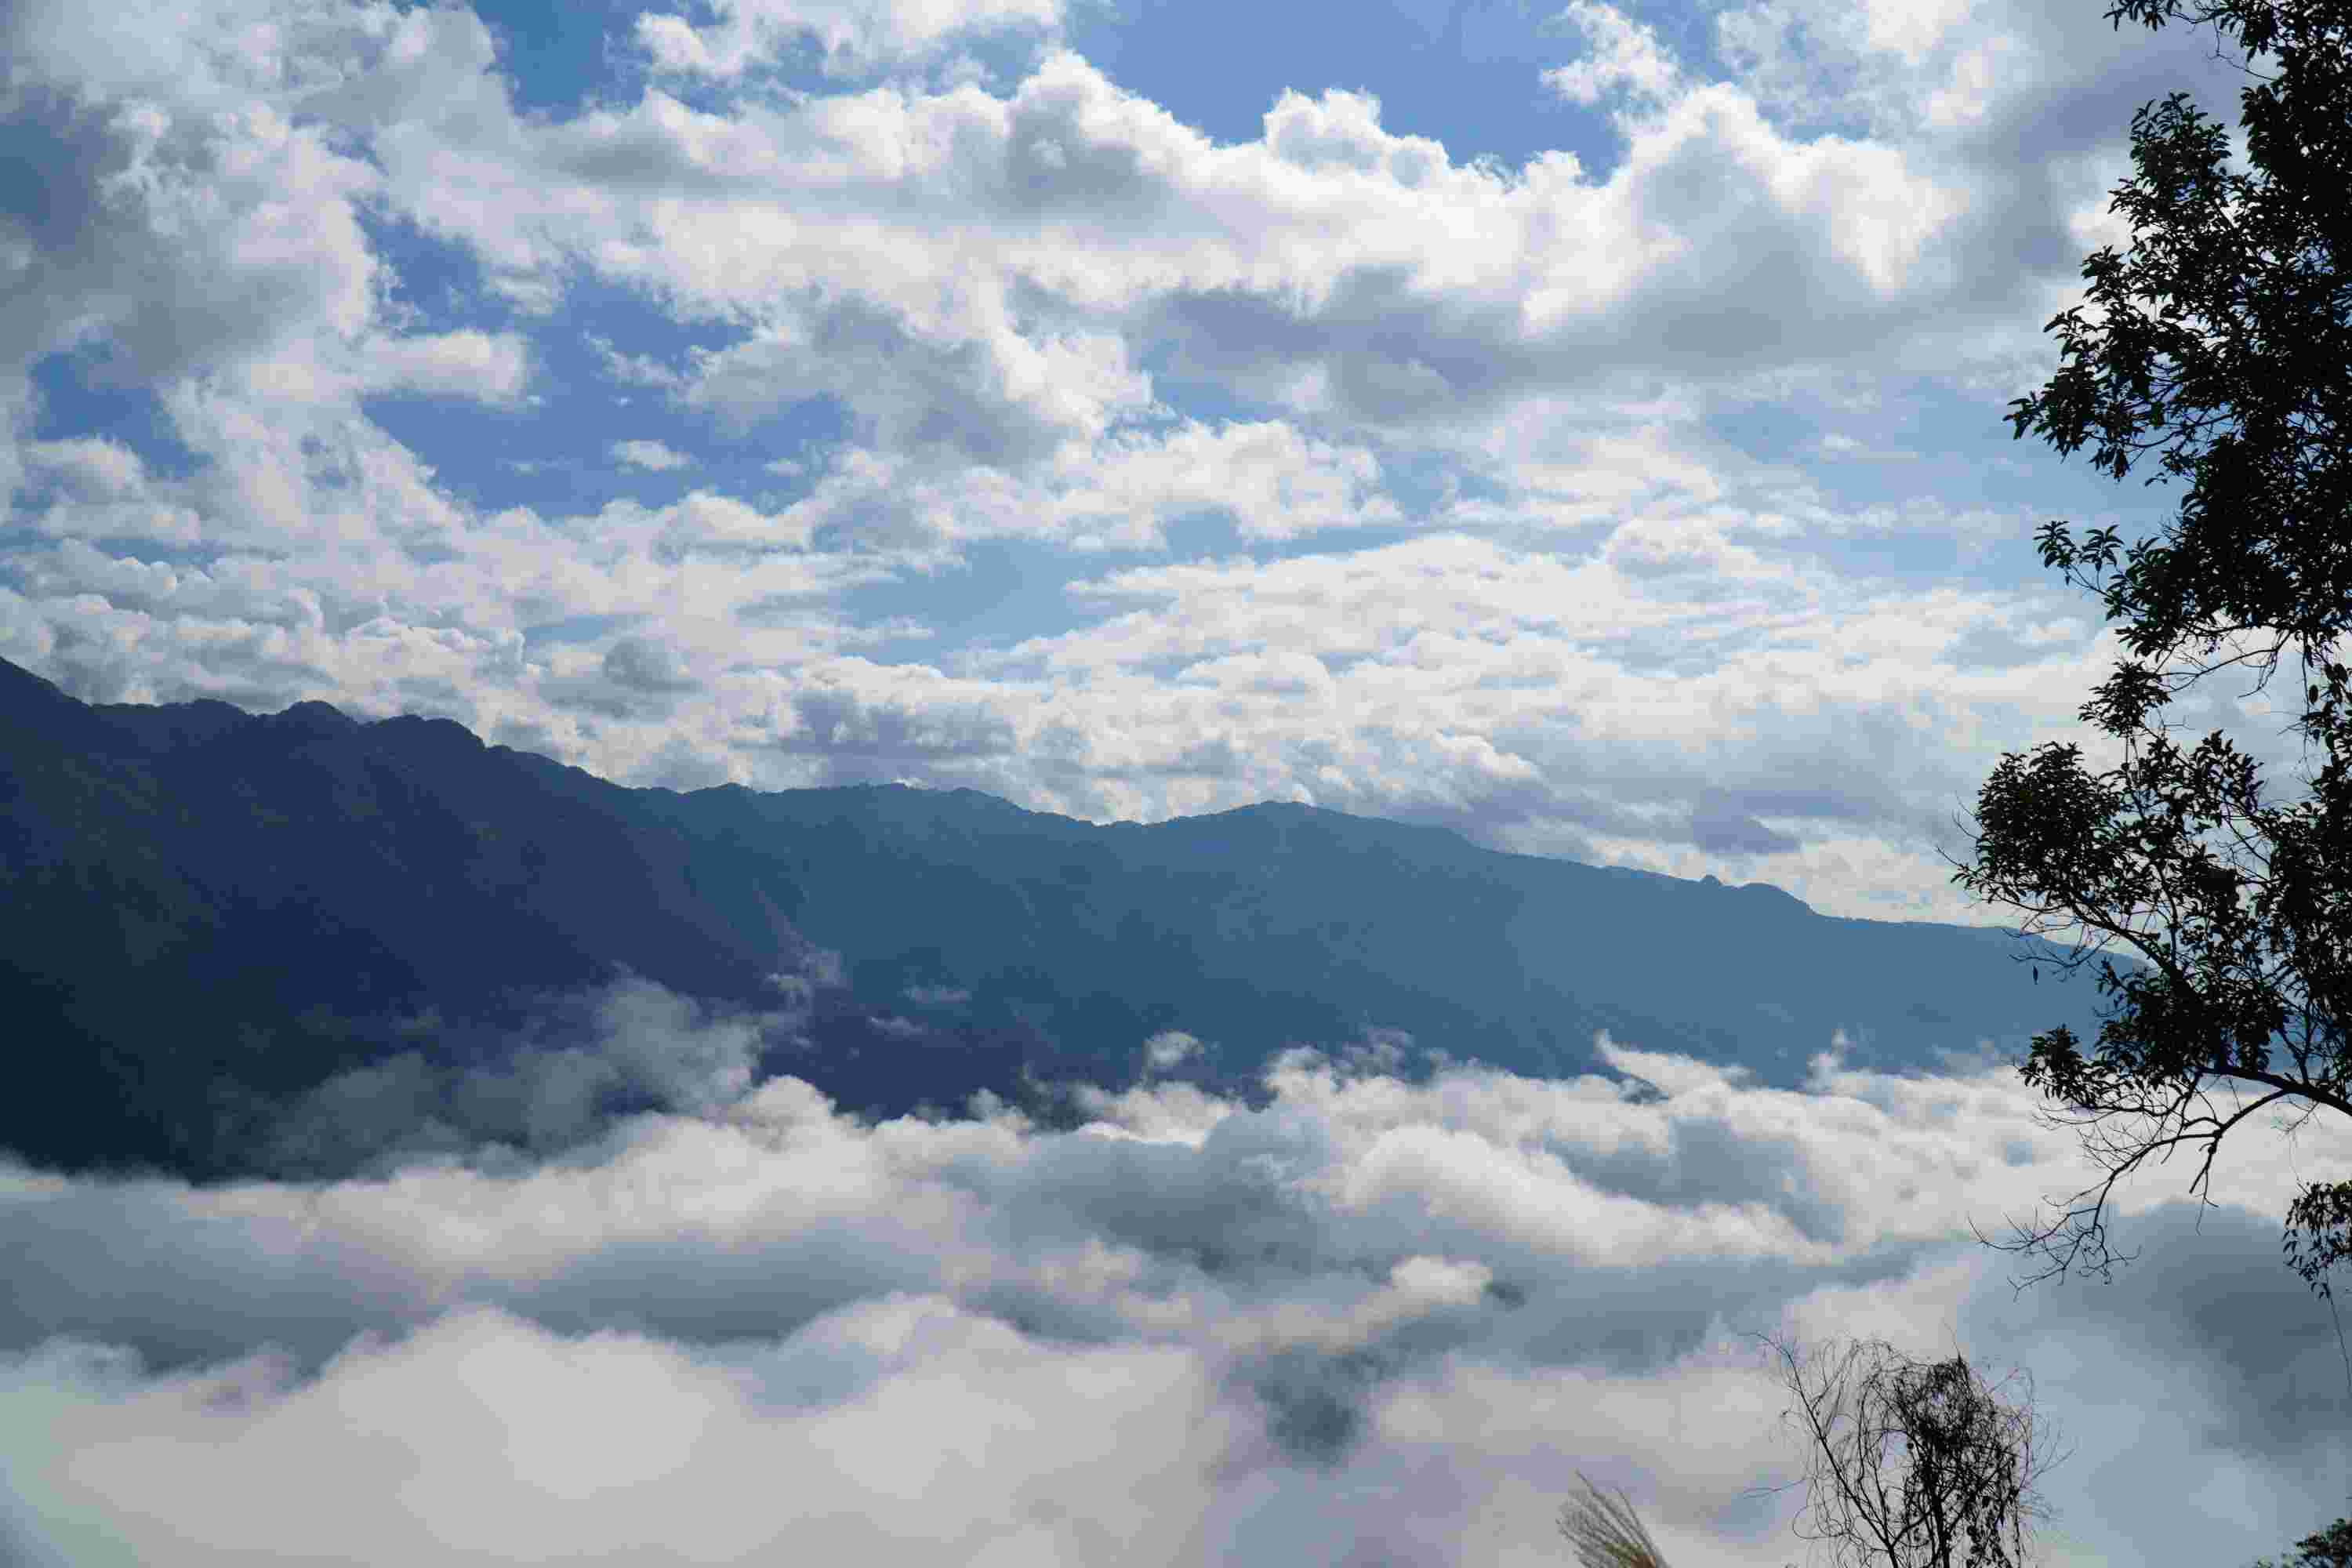 Cảnh quan thiên nhiên đẹp và hùng vĩ khu vực dãy núi Pú Đao, phía trên Đền thờ Vua Lê Lợi.